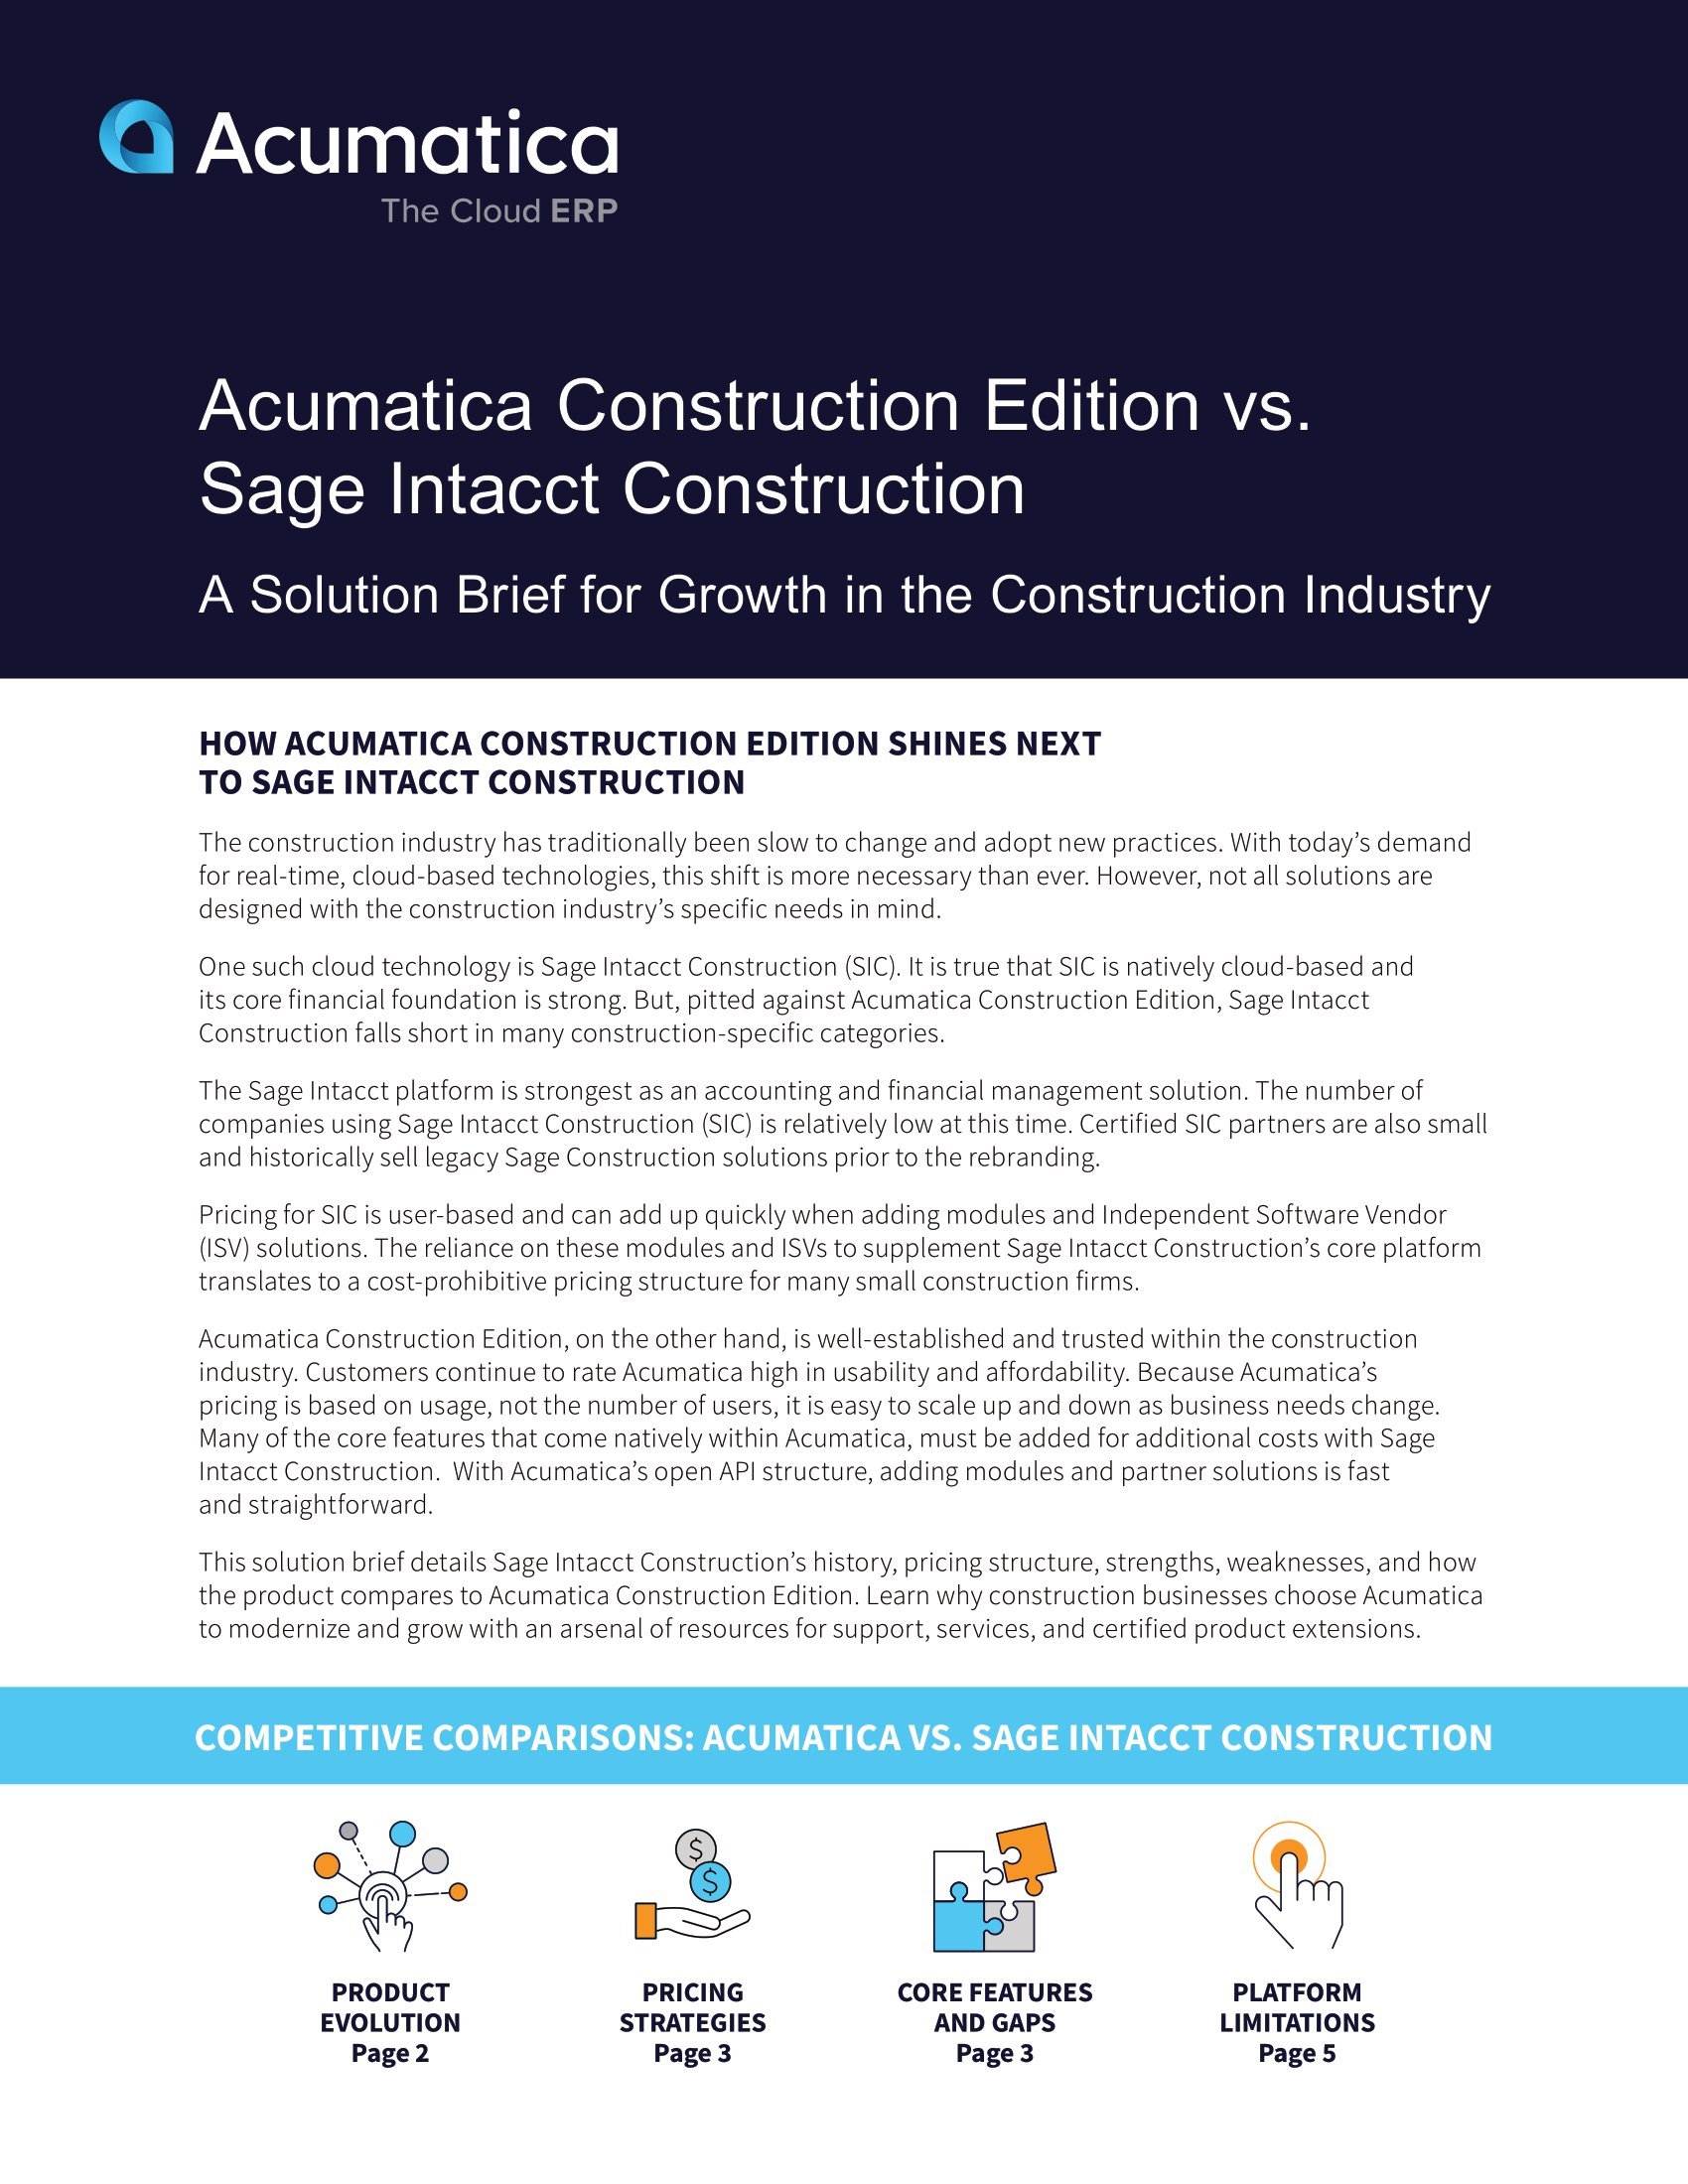 Comparación de Acumatica Construction Edition con Sage Intacct Construction